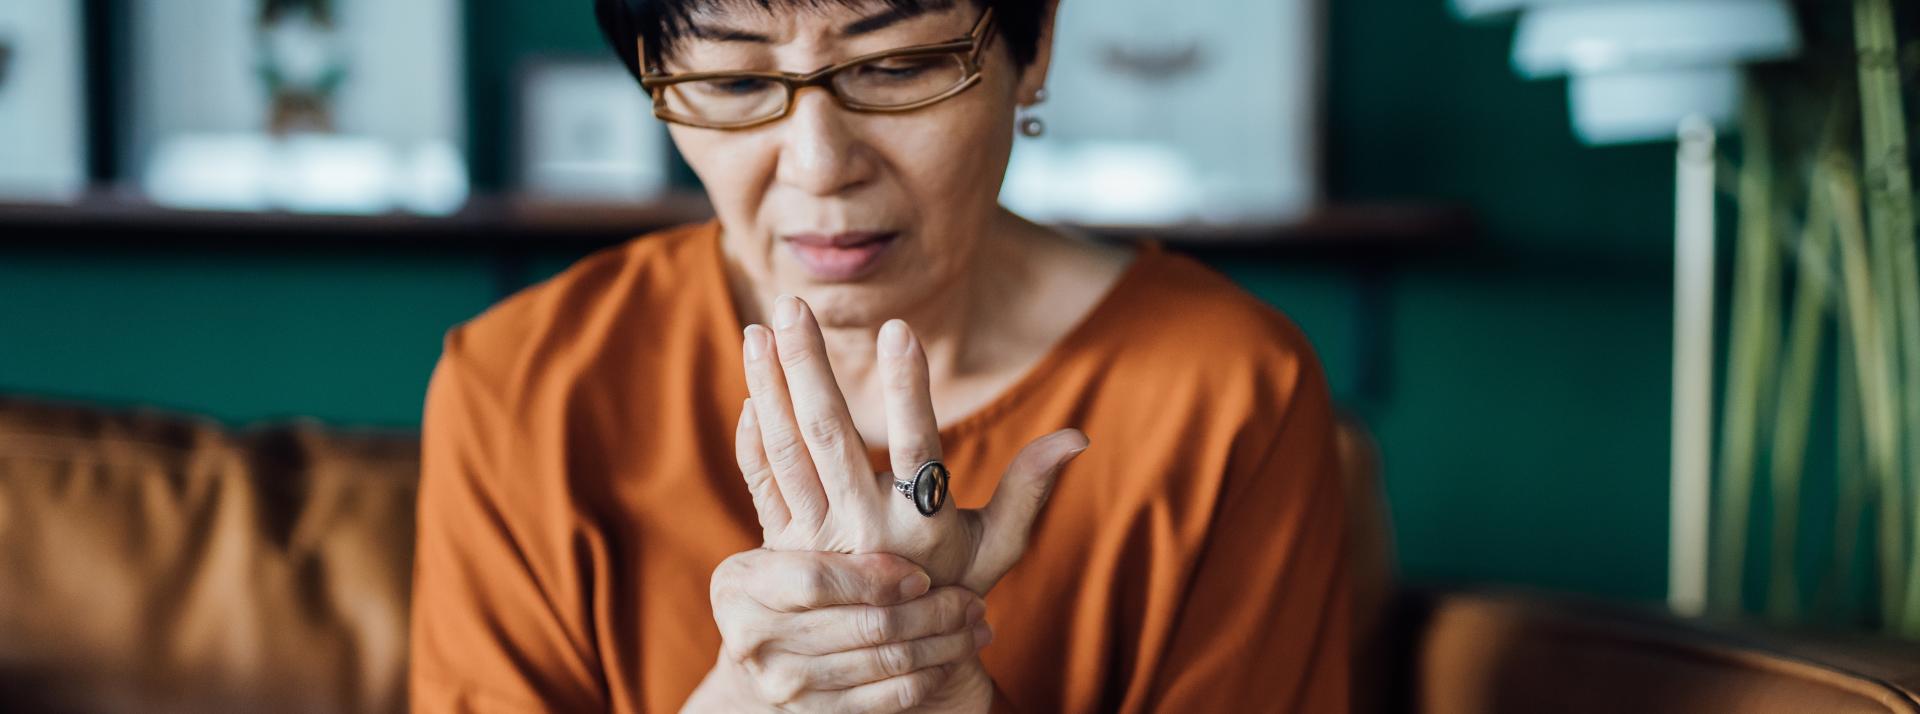 woman rubbing her hands in discomfort, suffering from arthritis